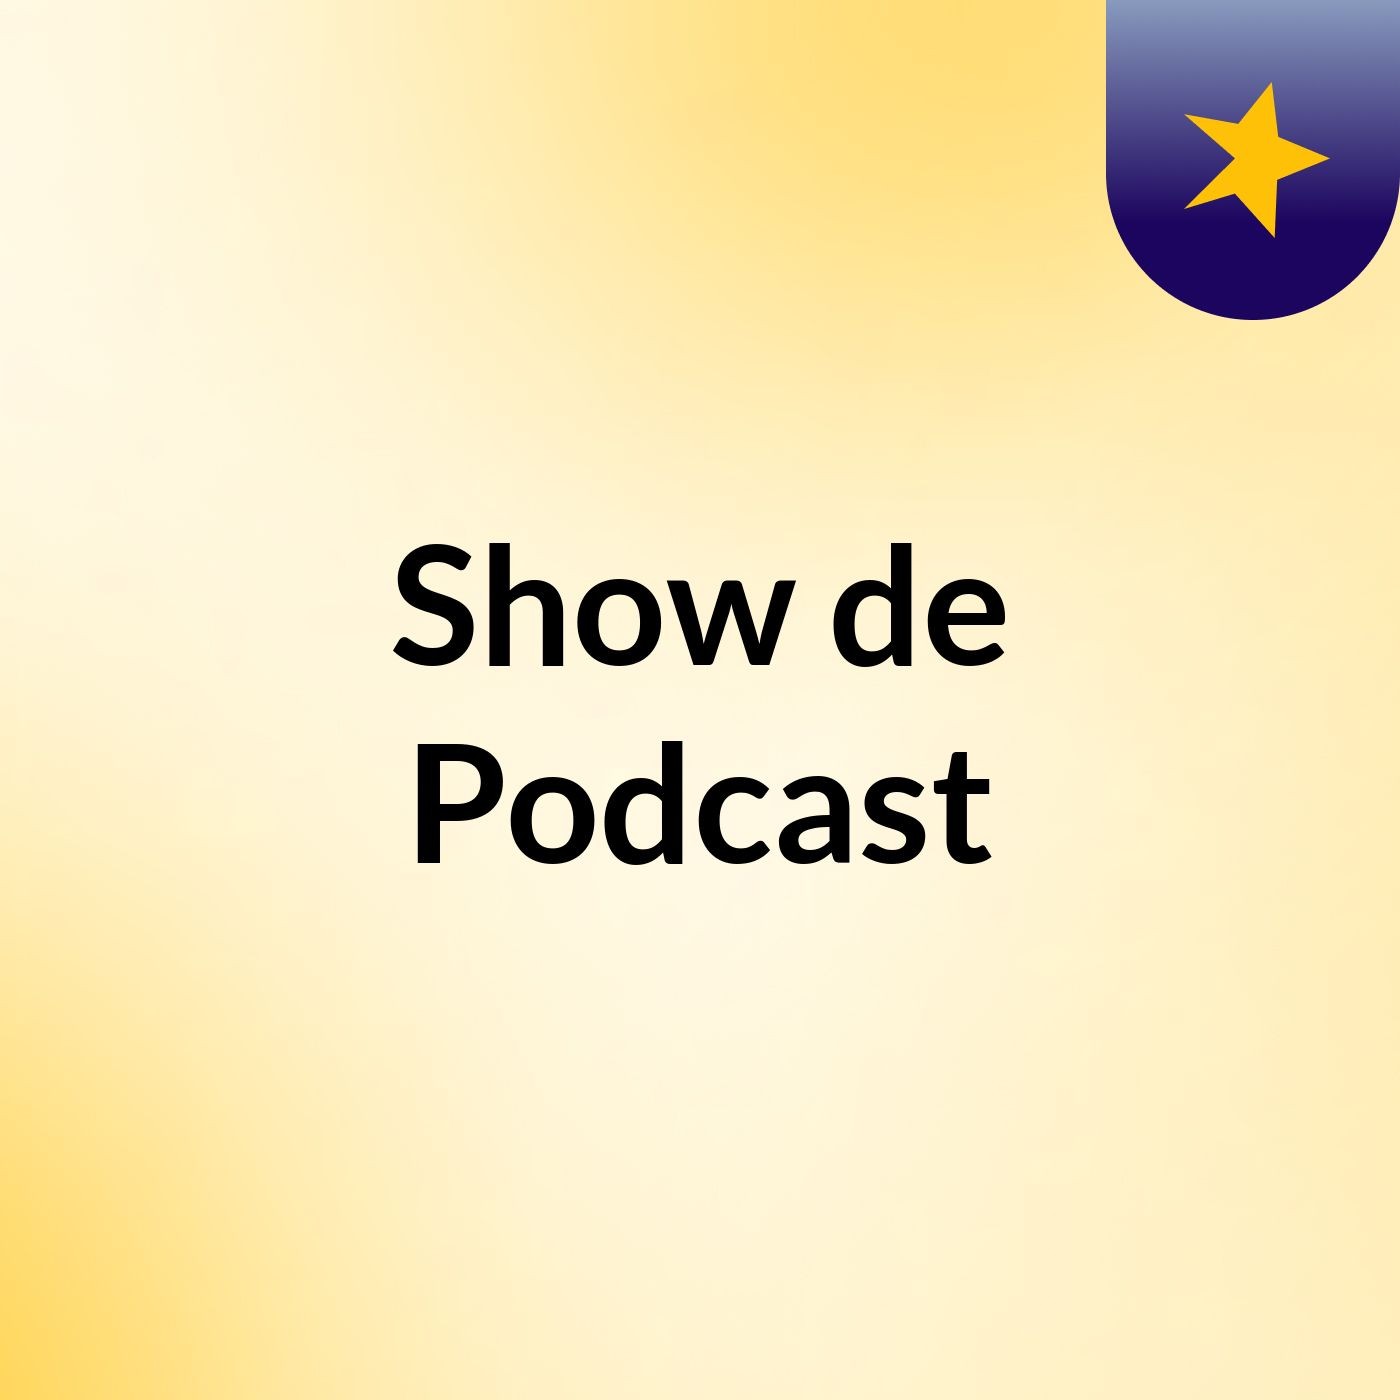 Show de Podcast